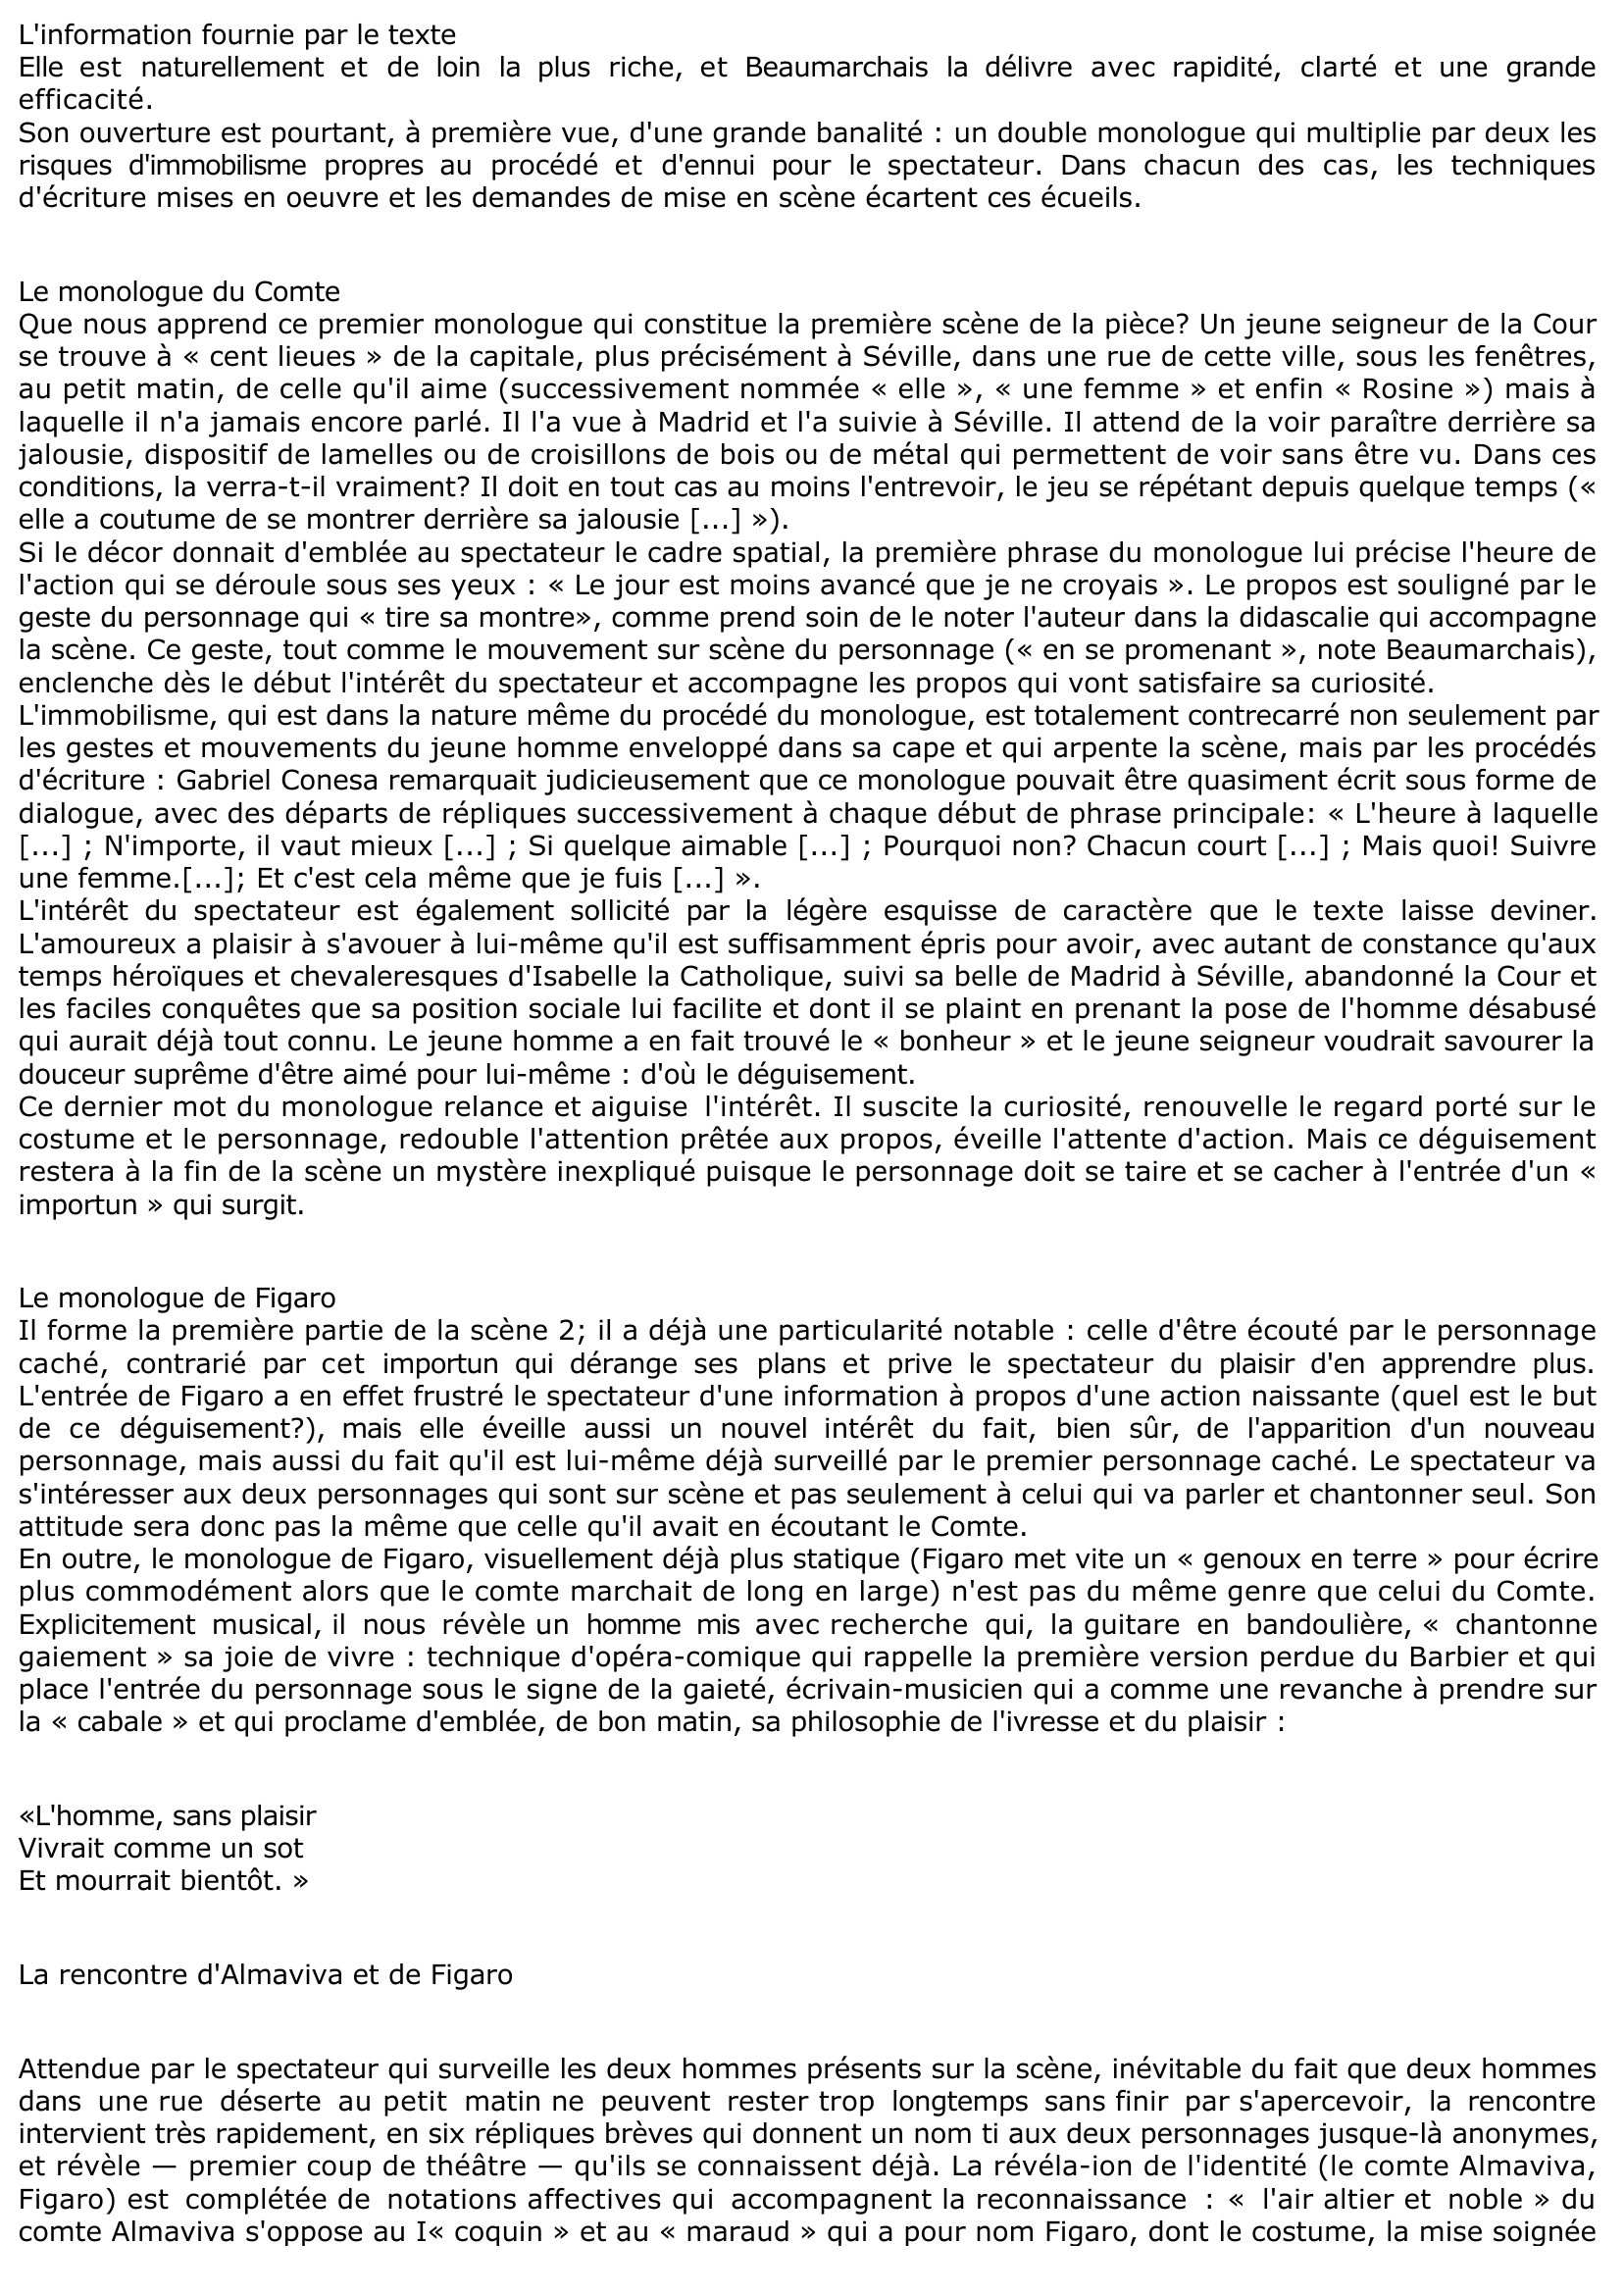 Prévisualisation du document ACTE I, SCÈNES 1 ET 2 du "Barbier de Séville" de Beaumarchais (commentaire)